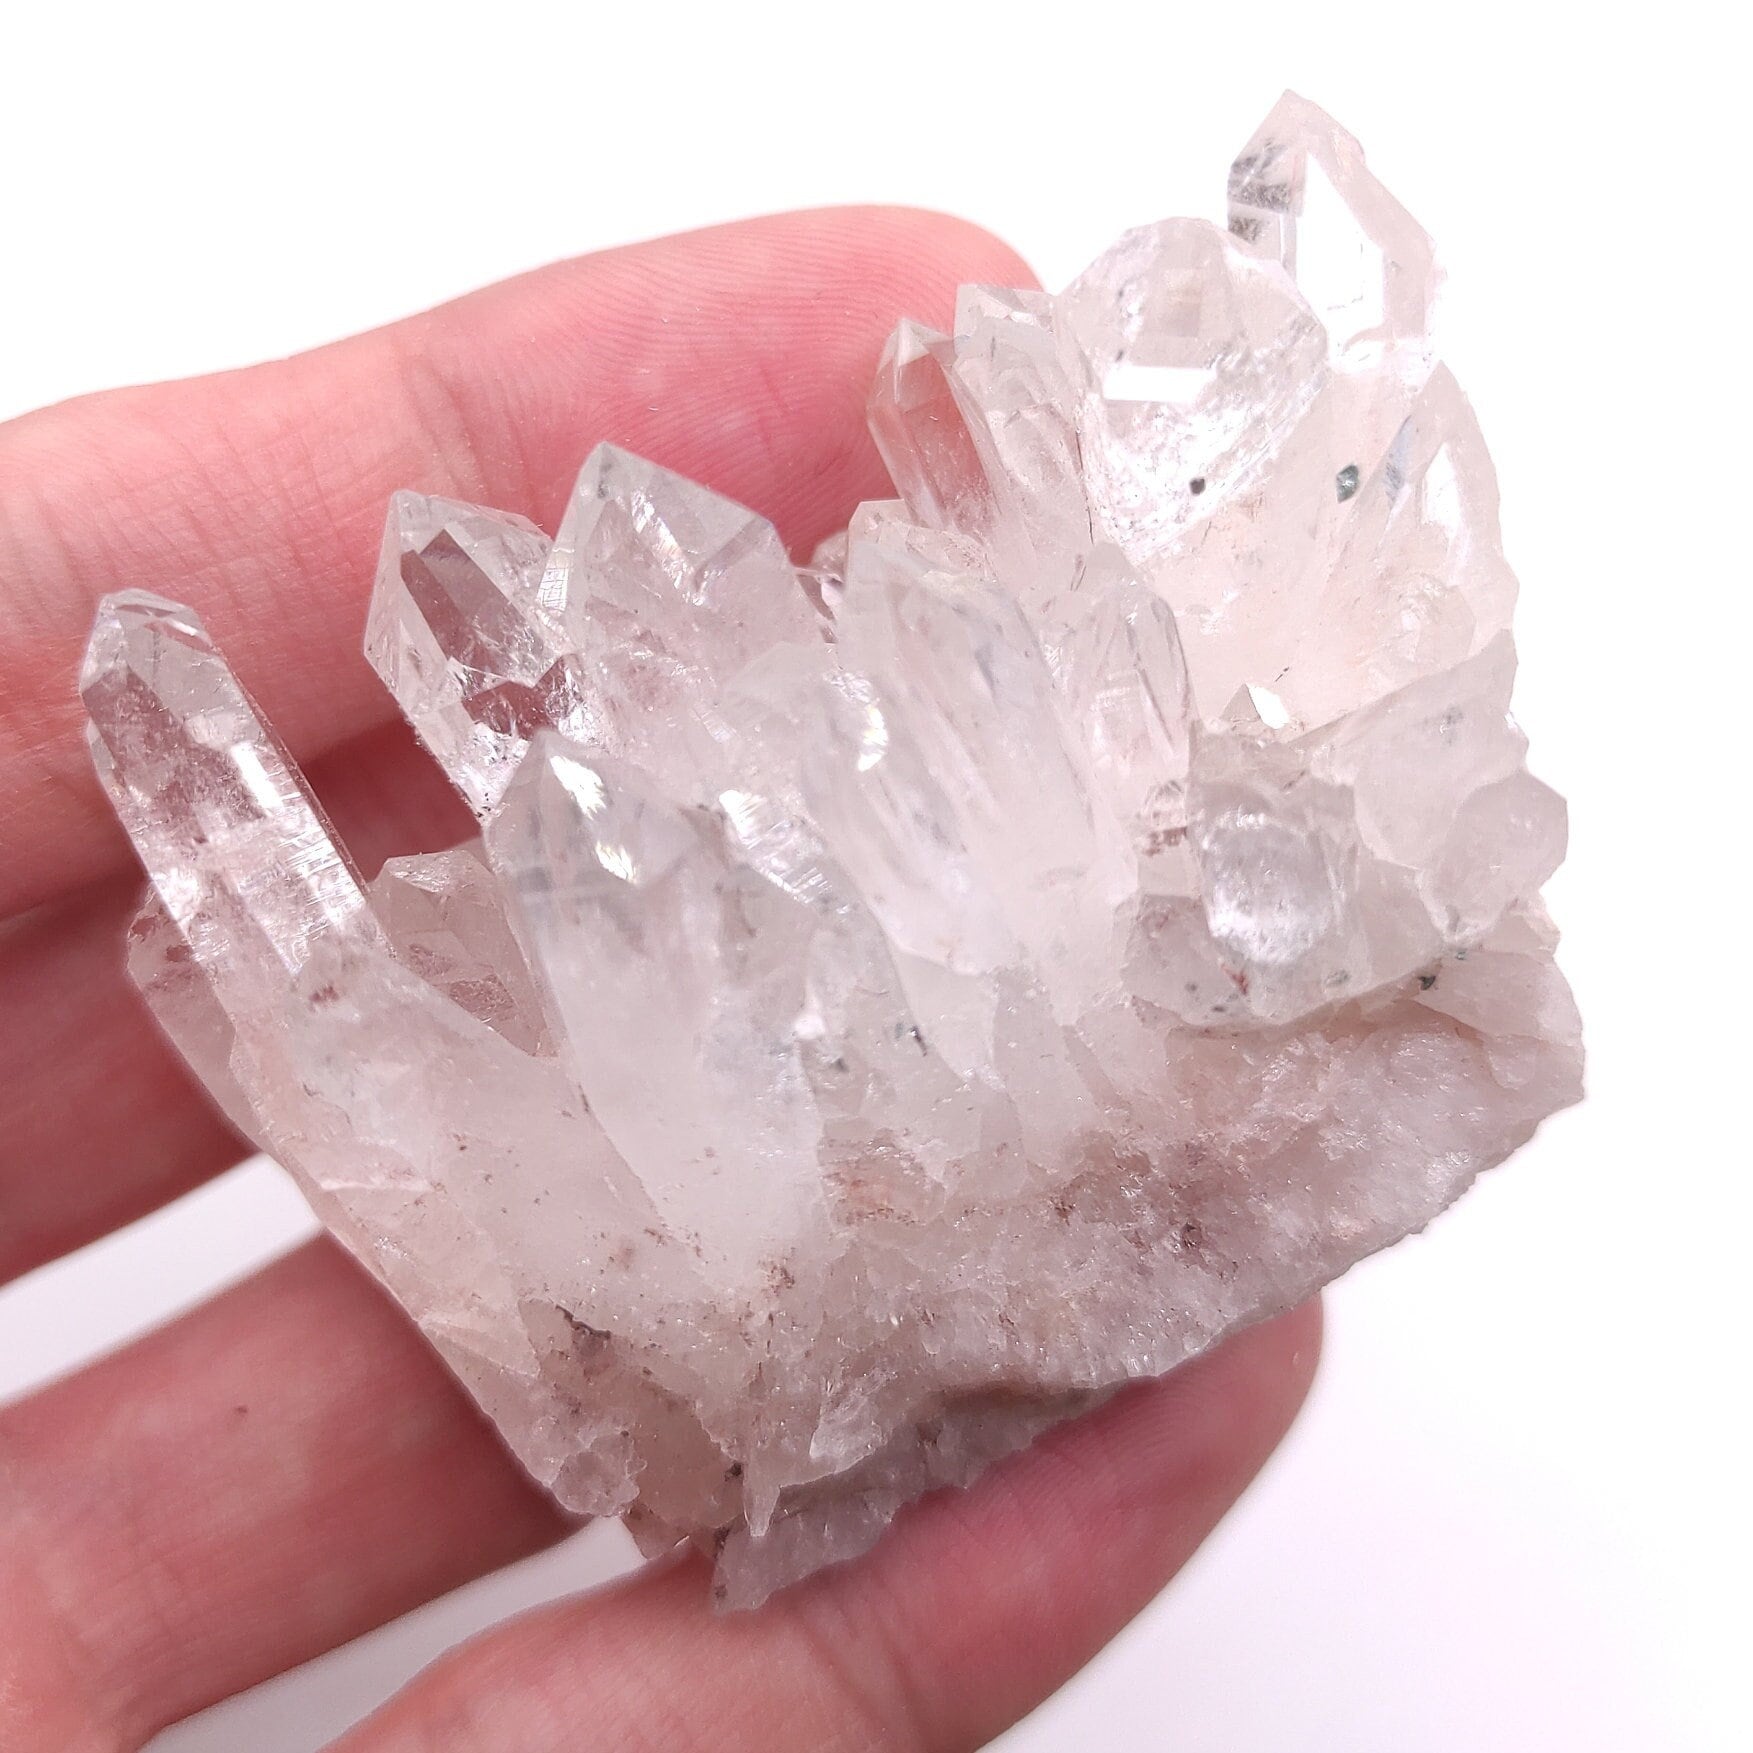 100g Natural Pink Lithium Coated Quartz Crystal - Bolivar, Santander, Colombia - Pink Quartz Cluster - Crystallized Quartz Mineral Specimen